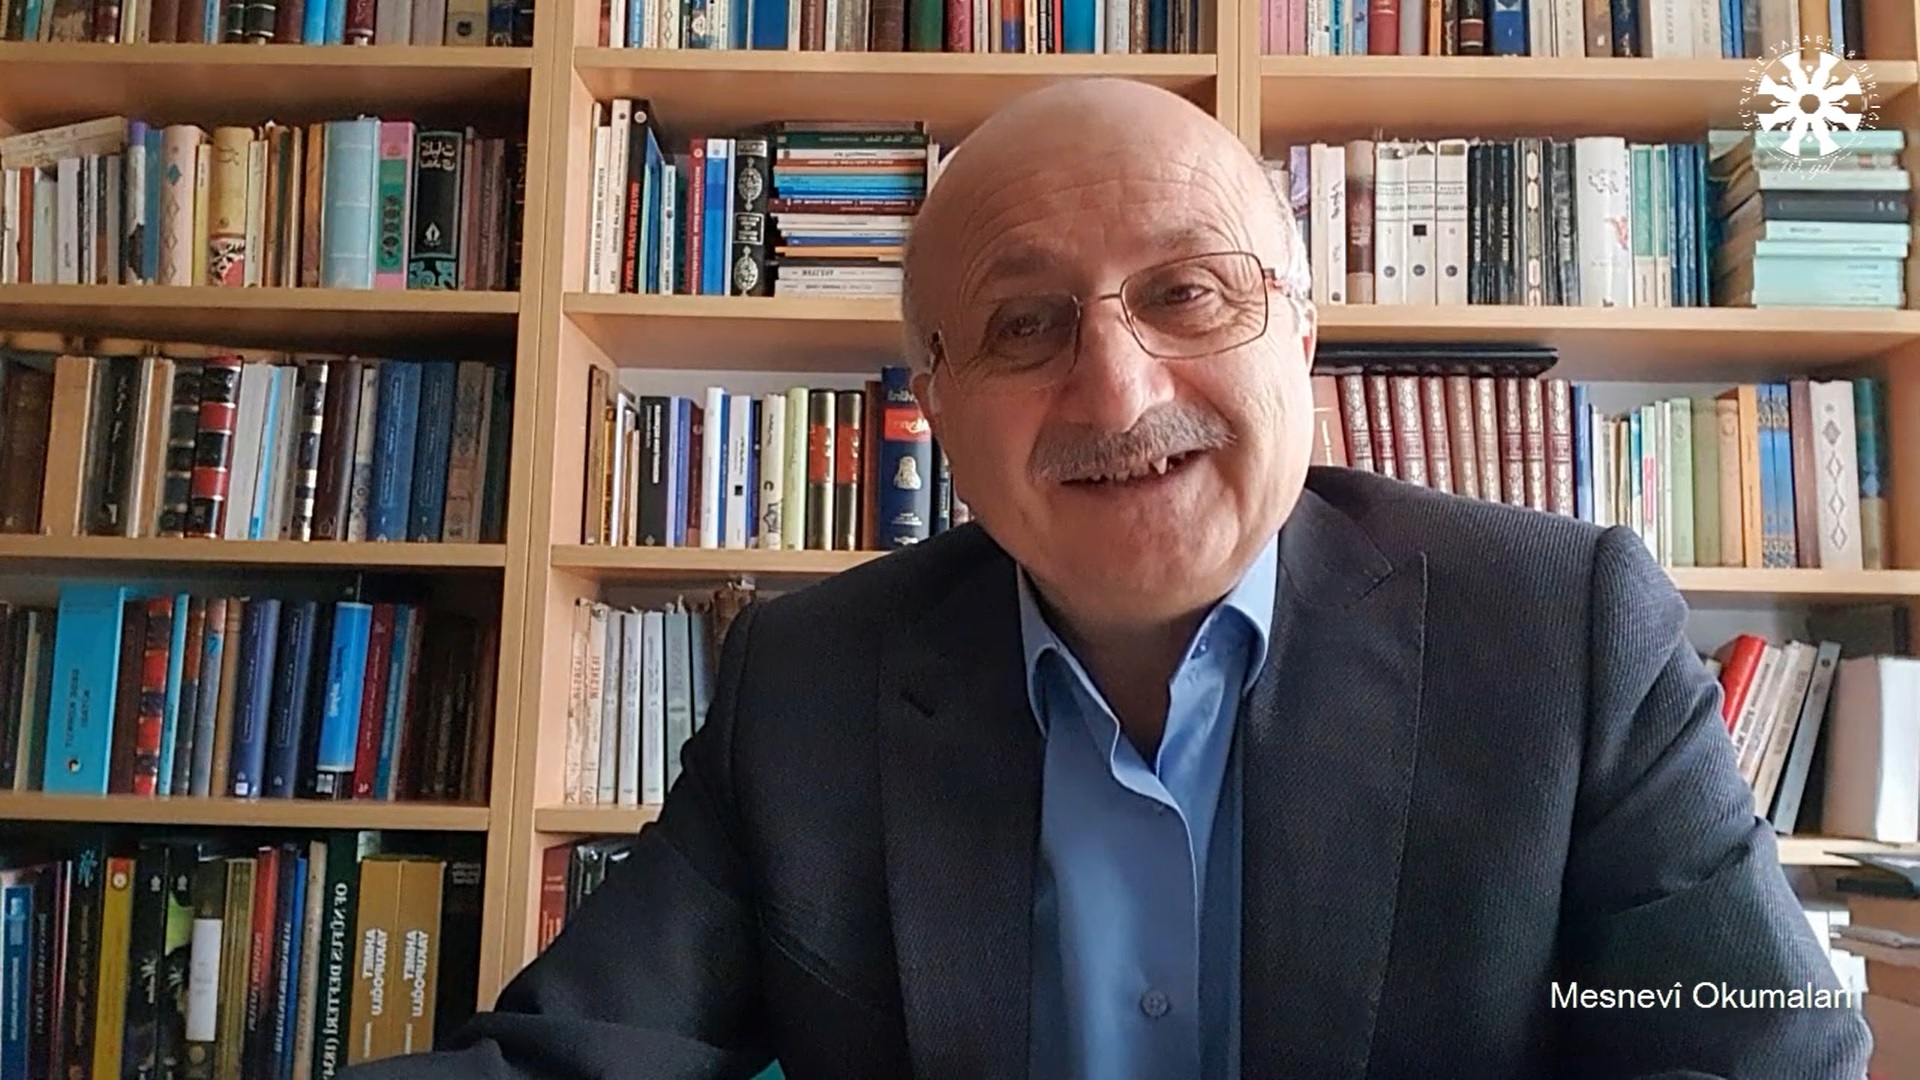 Mesnevî Okumaları -74- Prof. Dr. Adnan Karaismailoğlu